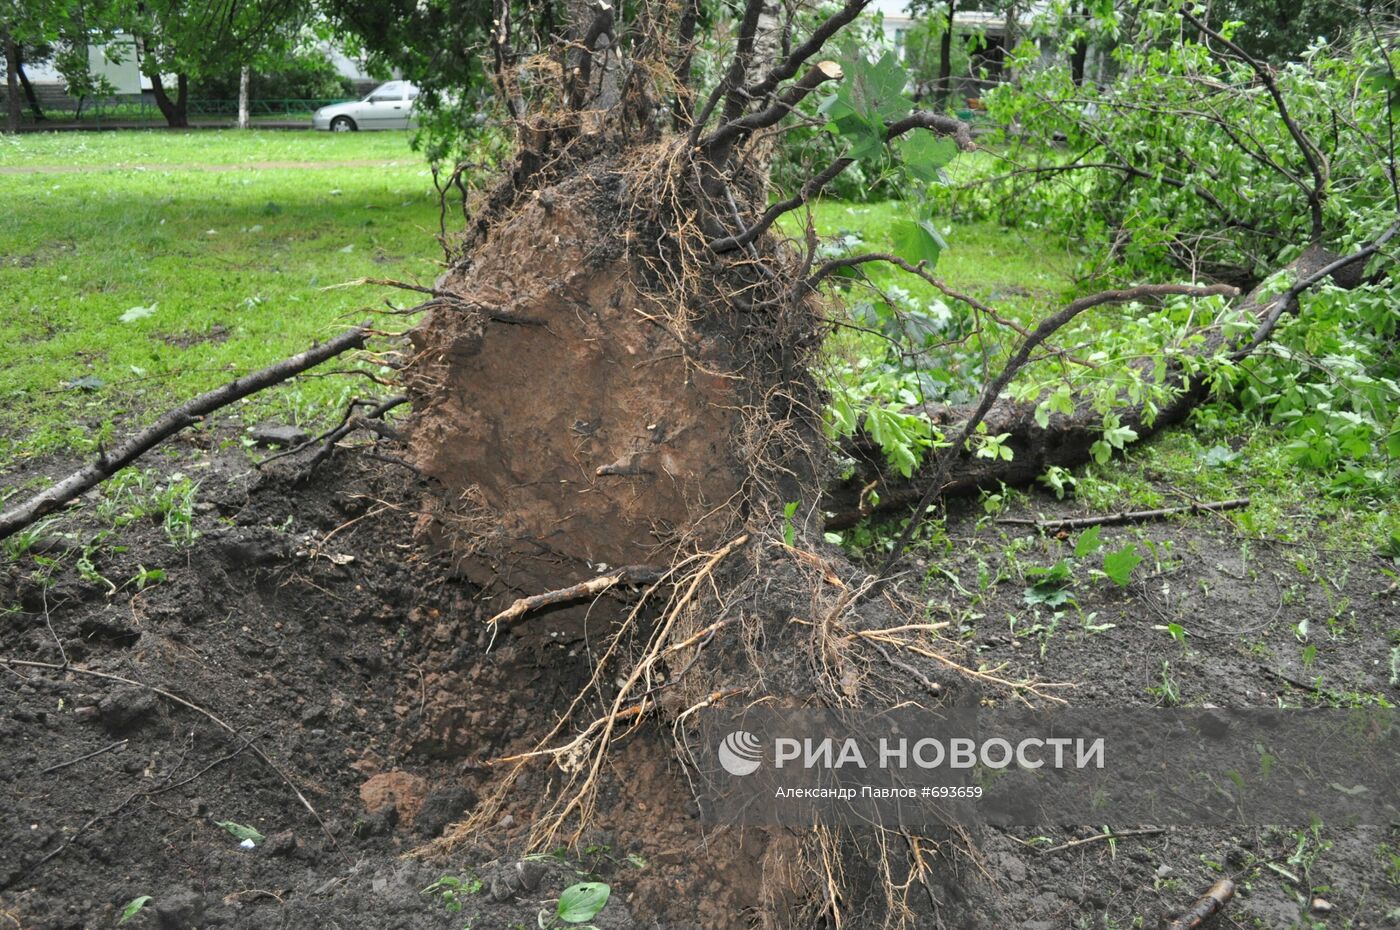 Последствия урагана в районе Гольяново в Москве